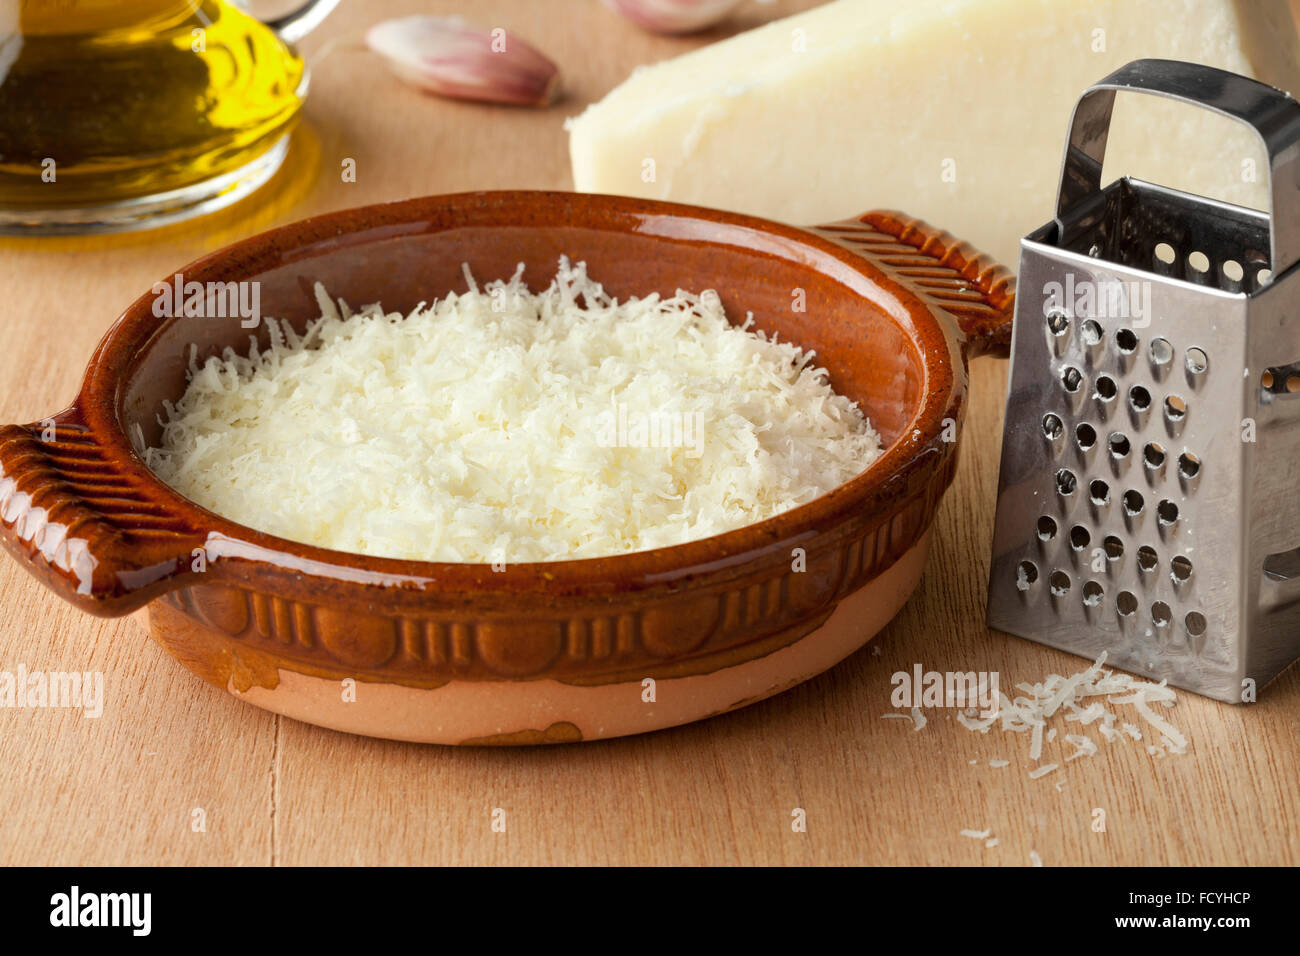 Schüssel mit geriebenem italienischen Pecorino Romano Käse, Olivenöl und Knoblauch Stockfoto